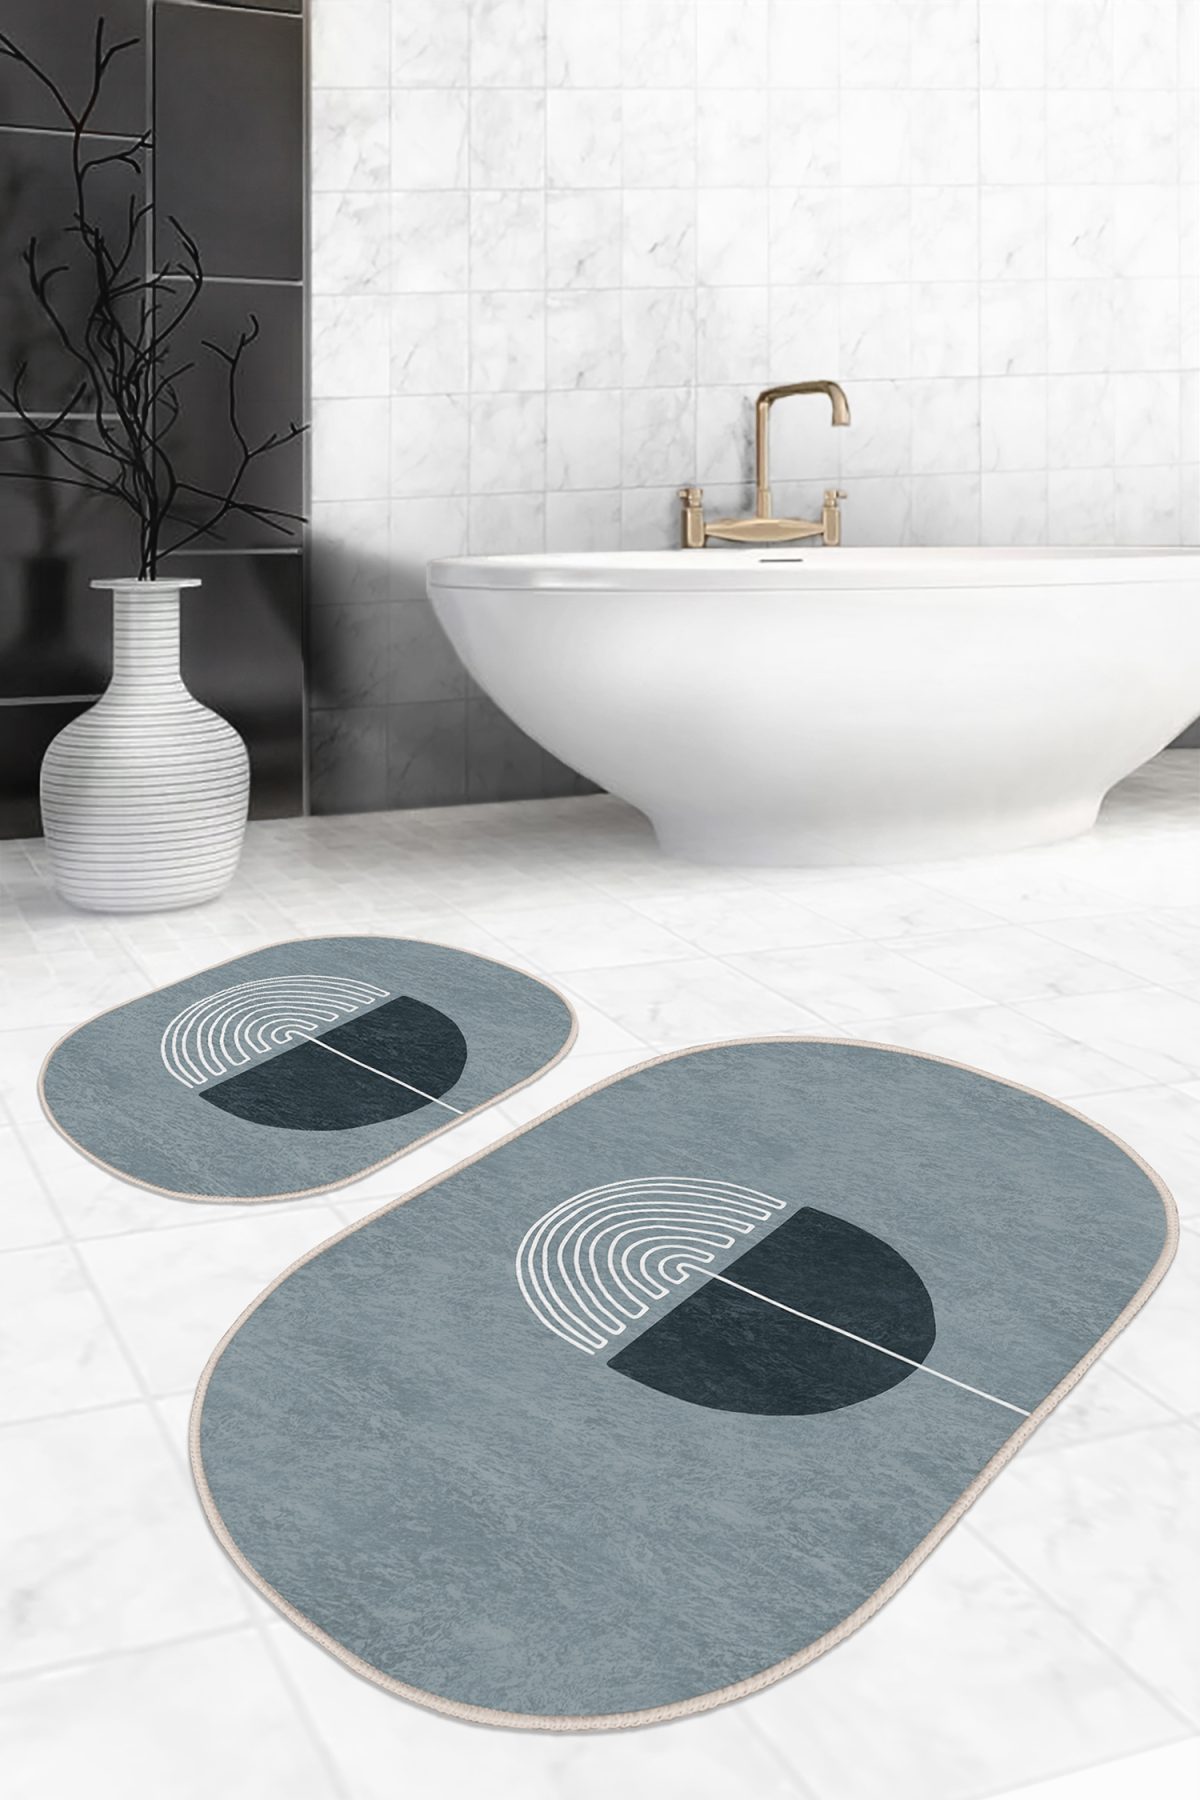 Onedraw Özel Tasarımlı Dijital Baskılı 2'li Oval Kaymaz Tabanlı Banyo & Mutfak Paspas Takımı Realhomes